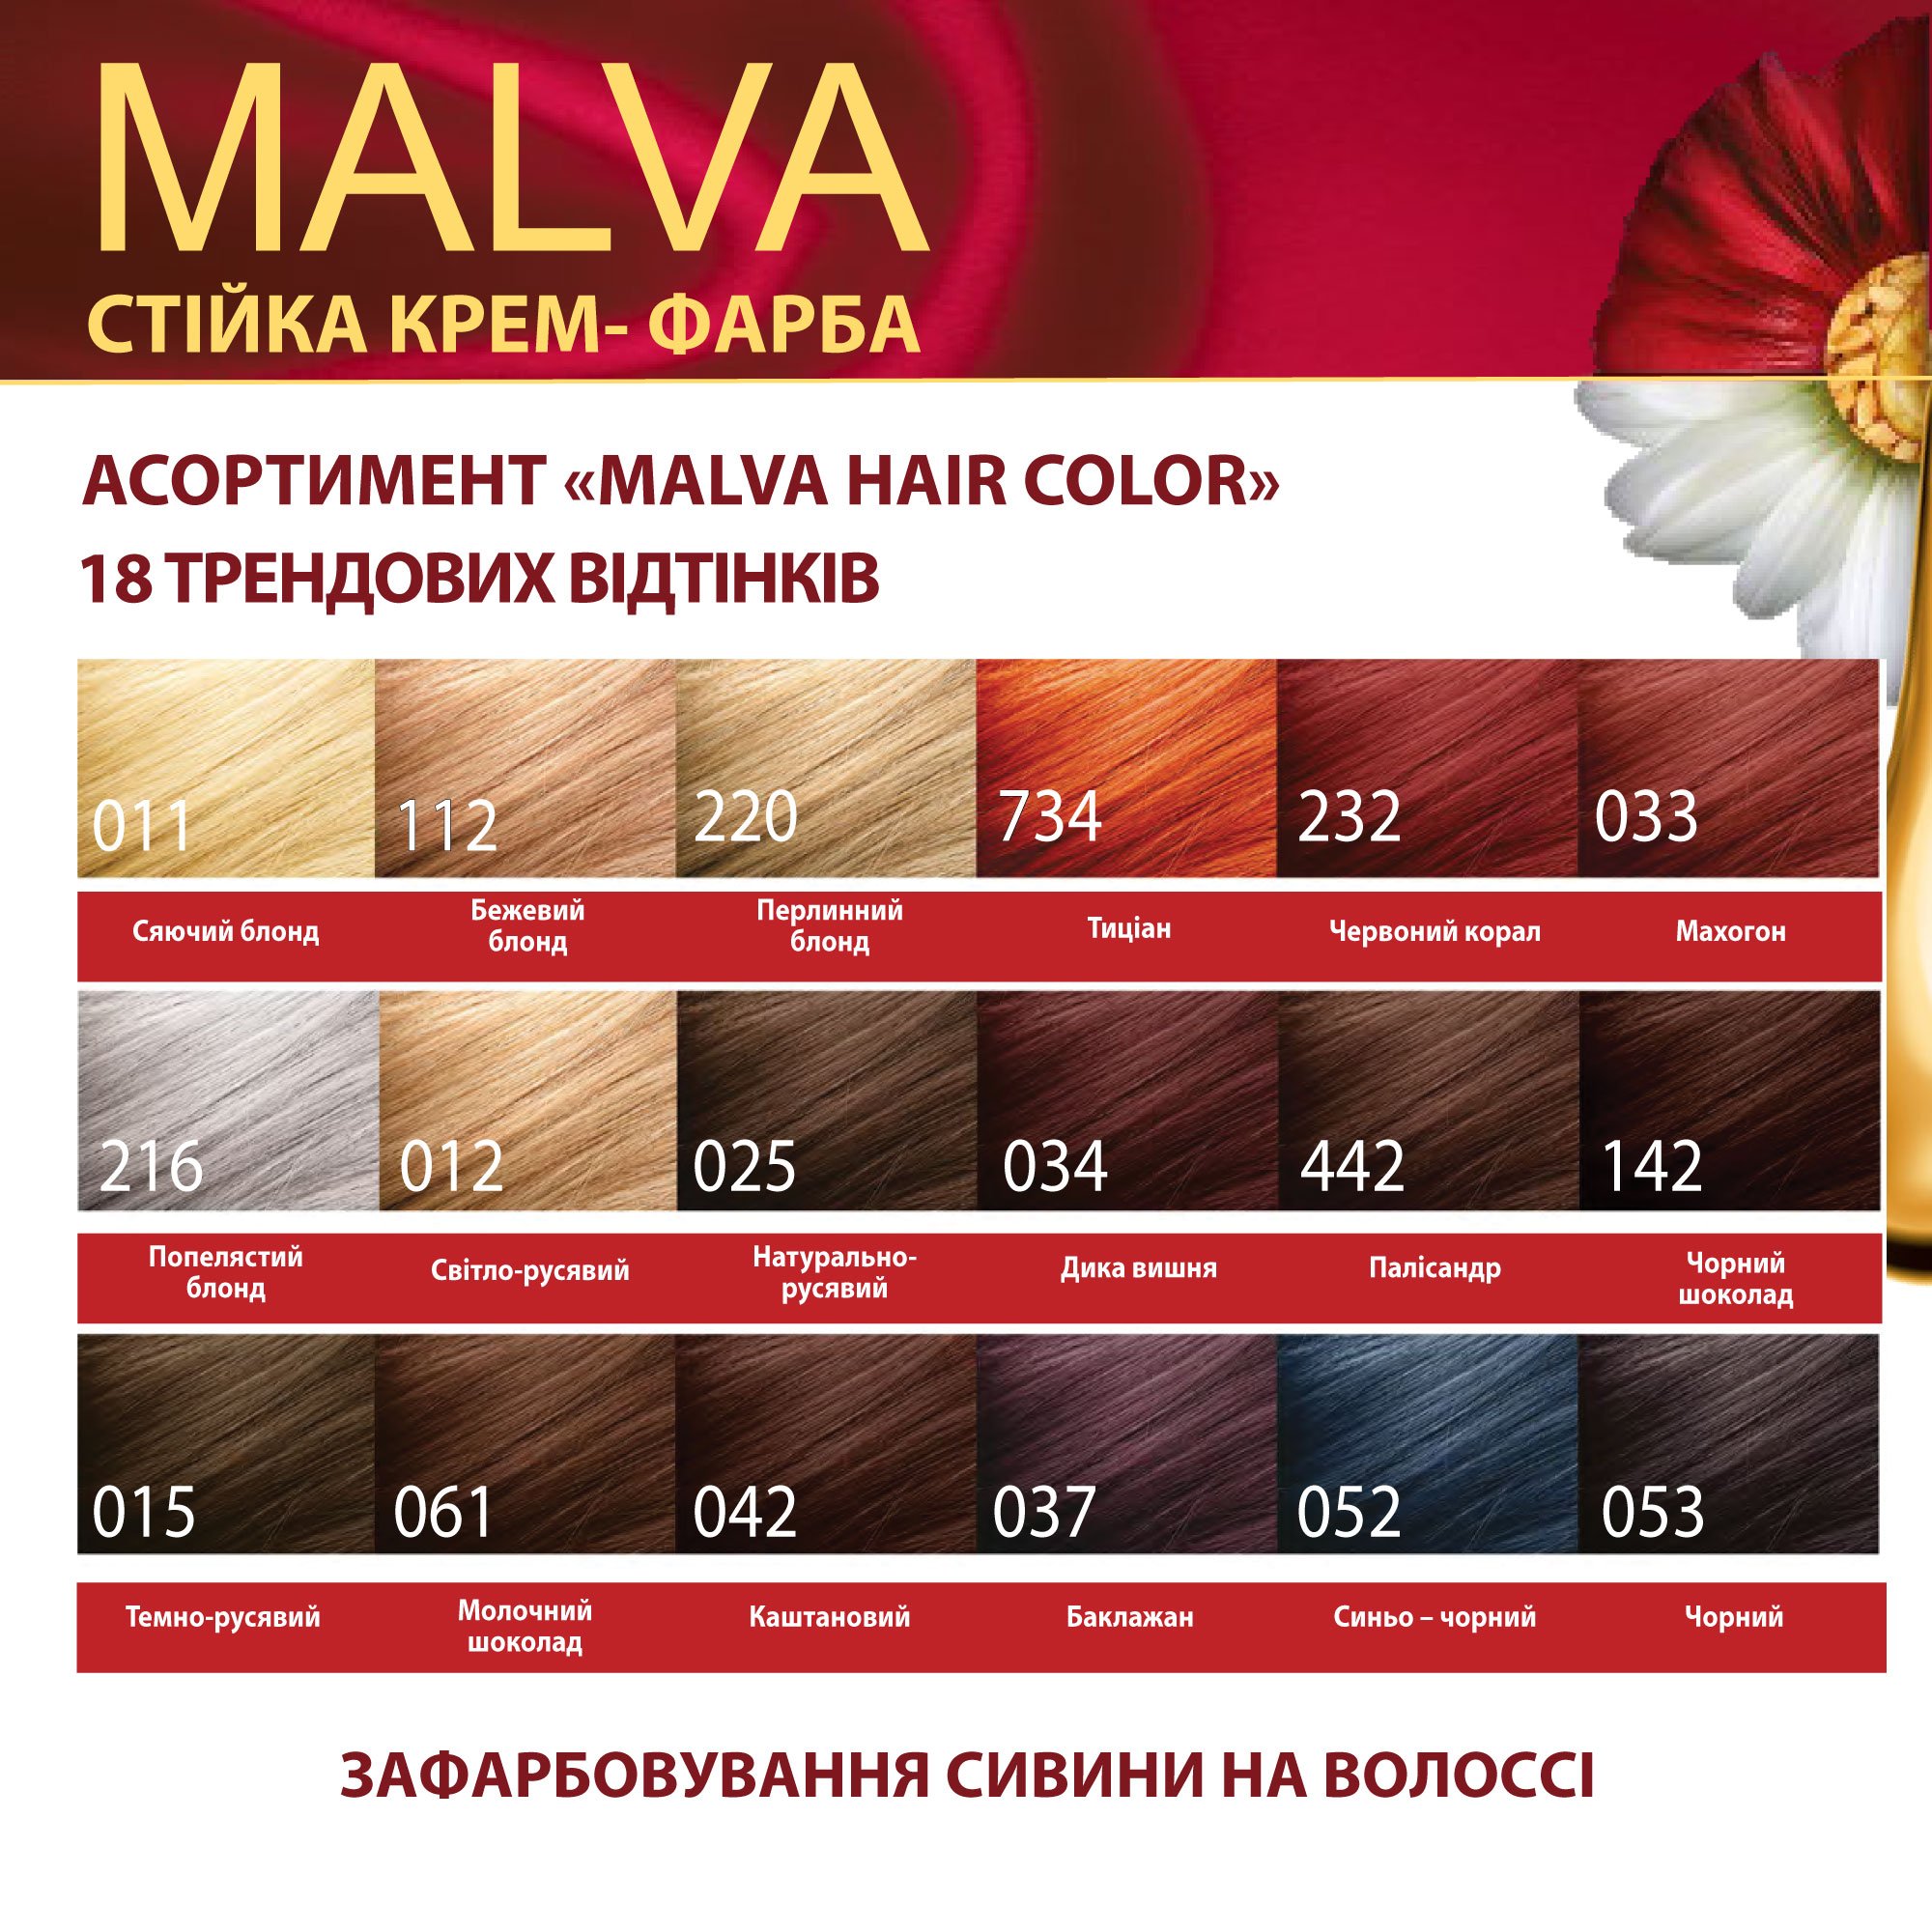 Крем-фарба для волосся Acme Color Malva, відтінок 015 (Темно-русявий), 95 мл - фото 6